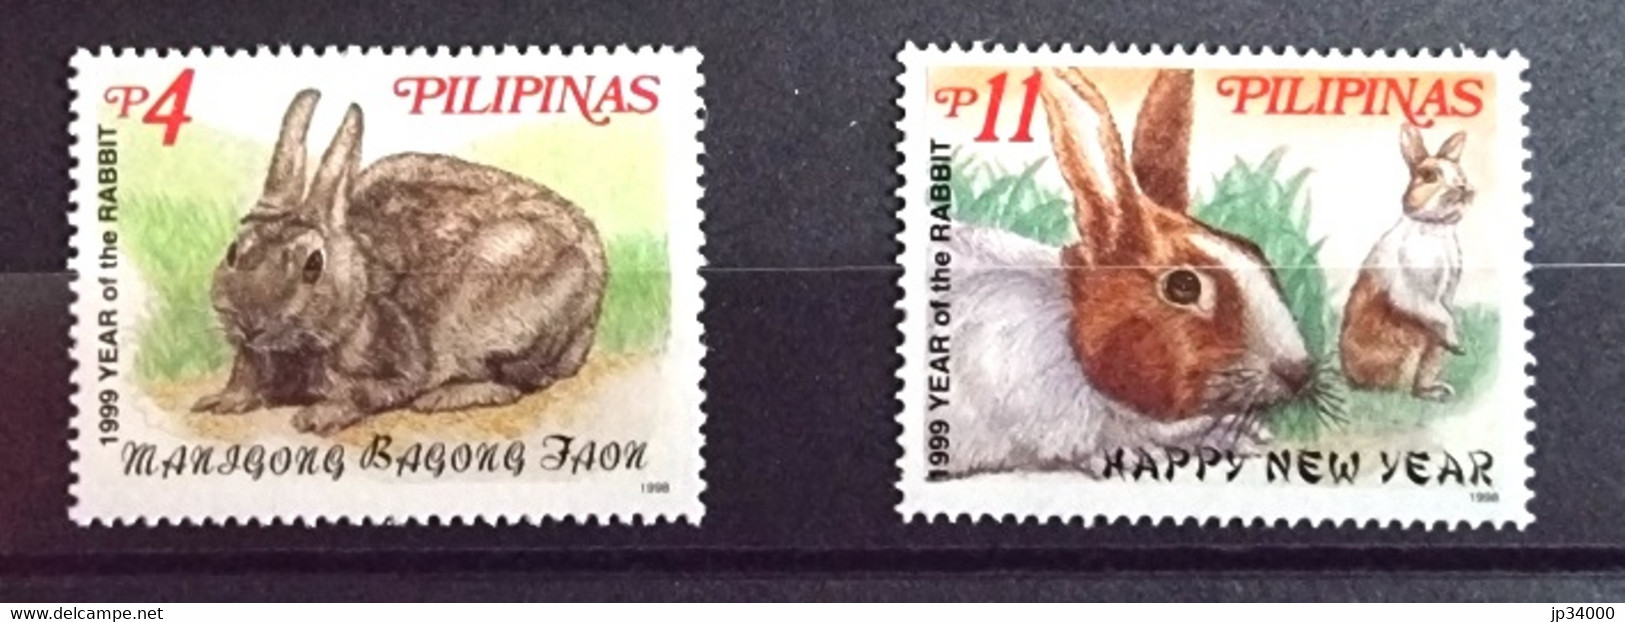 PHILIPPINES-PILIPINAS Lapins, Lapin, Rabbit, Conejo. Année Du Lapin 1999 2 Valeurs Dentelé. ** Neuf Sans Charnière - Lapins